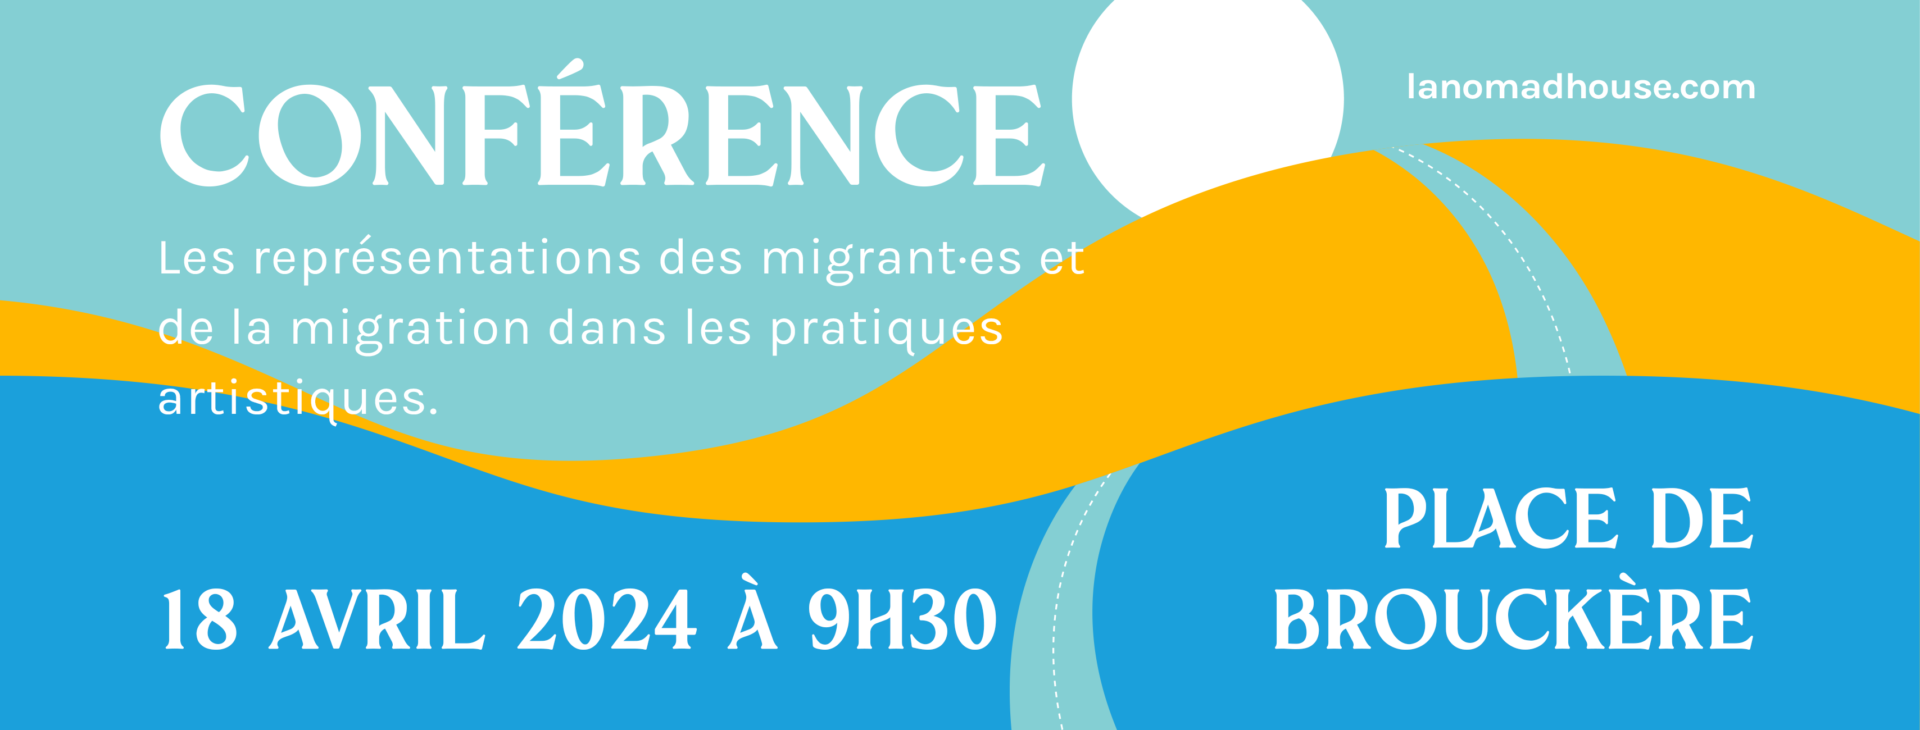 Conférence Les Nouveaux Disparus ; la migration ; Bruxelles ; experts ; pratiques artistiques